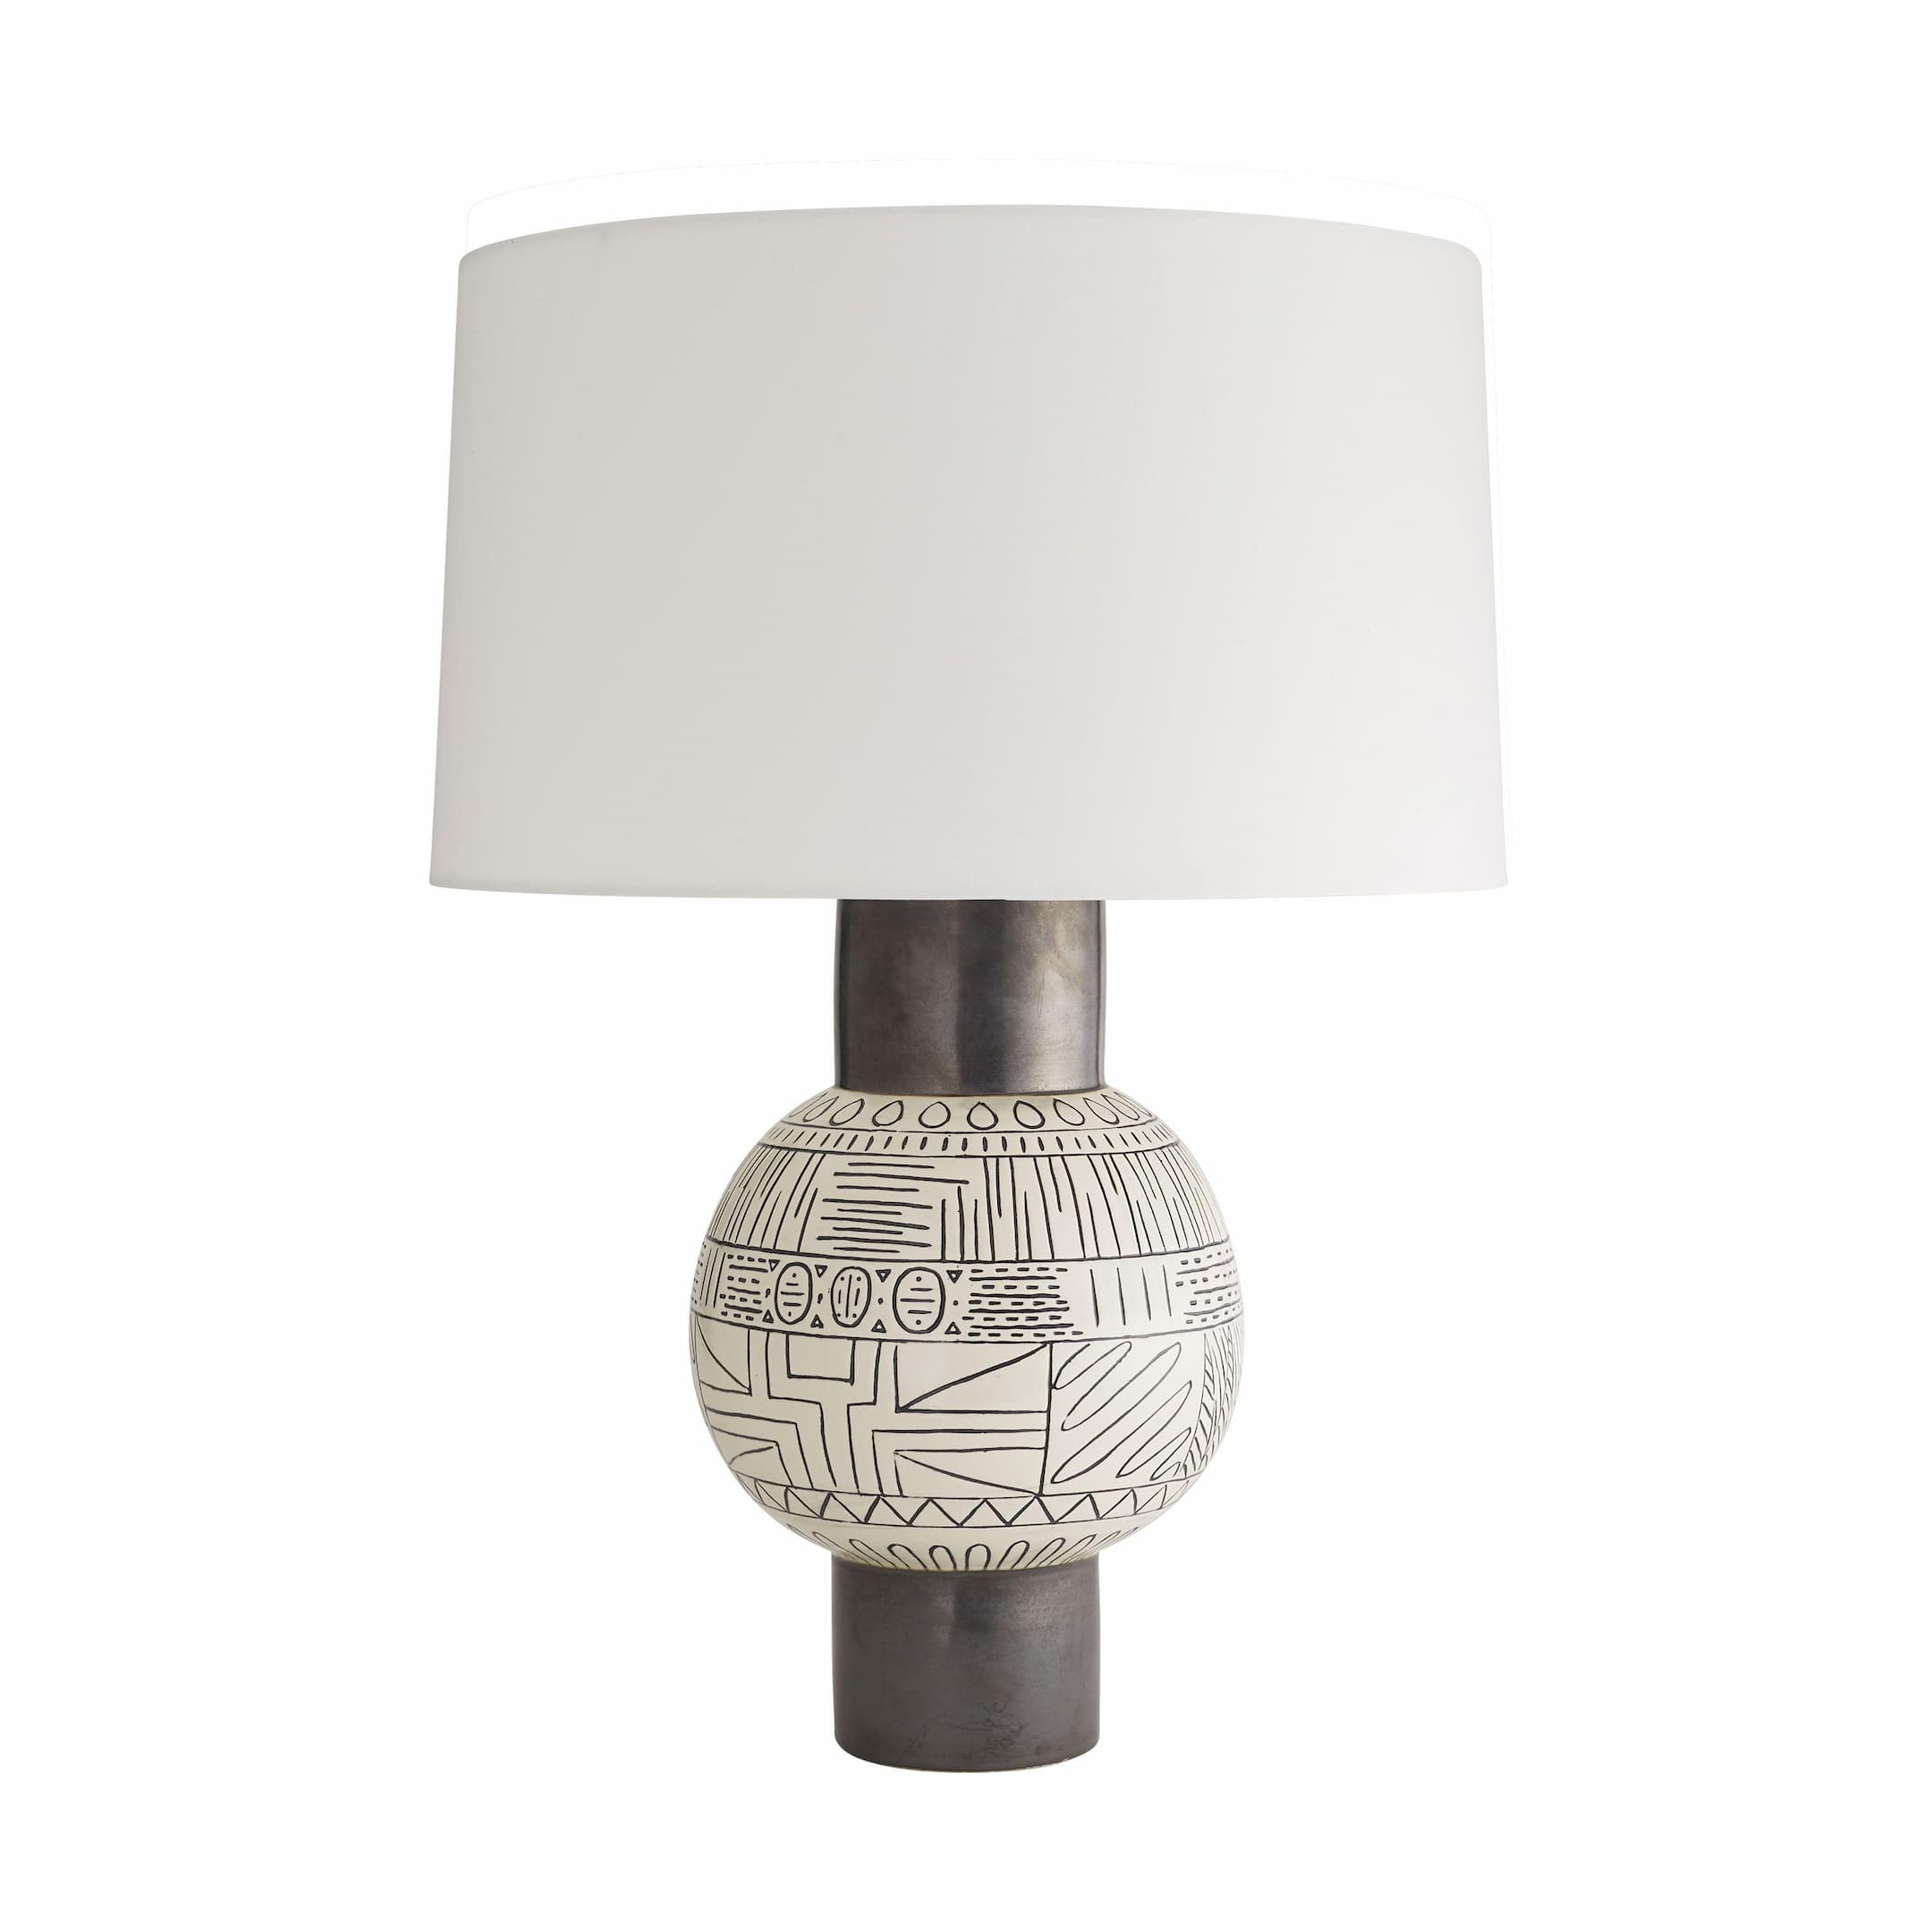 Купить Настольная лампа Escambia Lamp в интернет-магазине roooms.ru